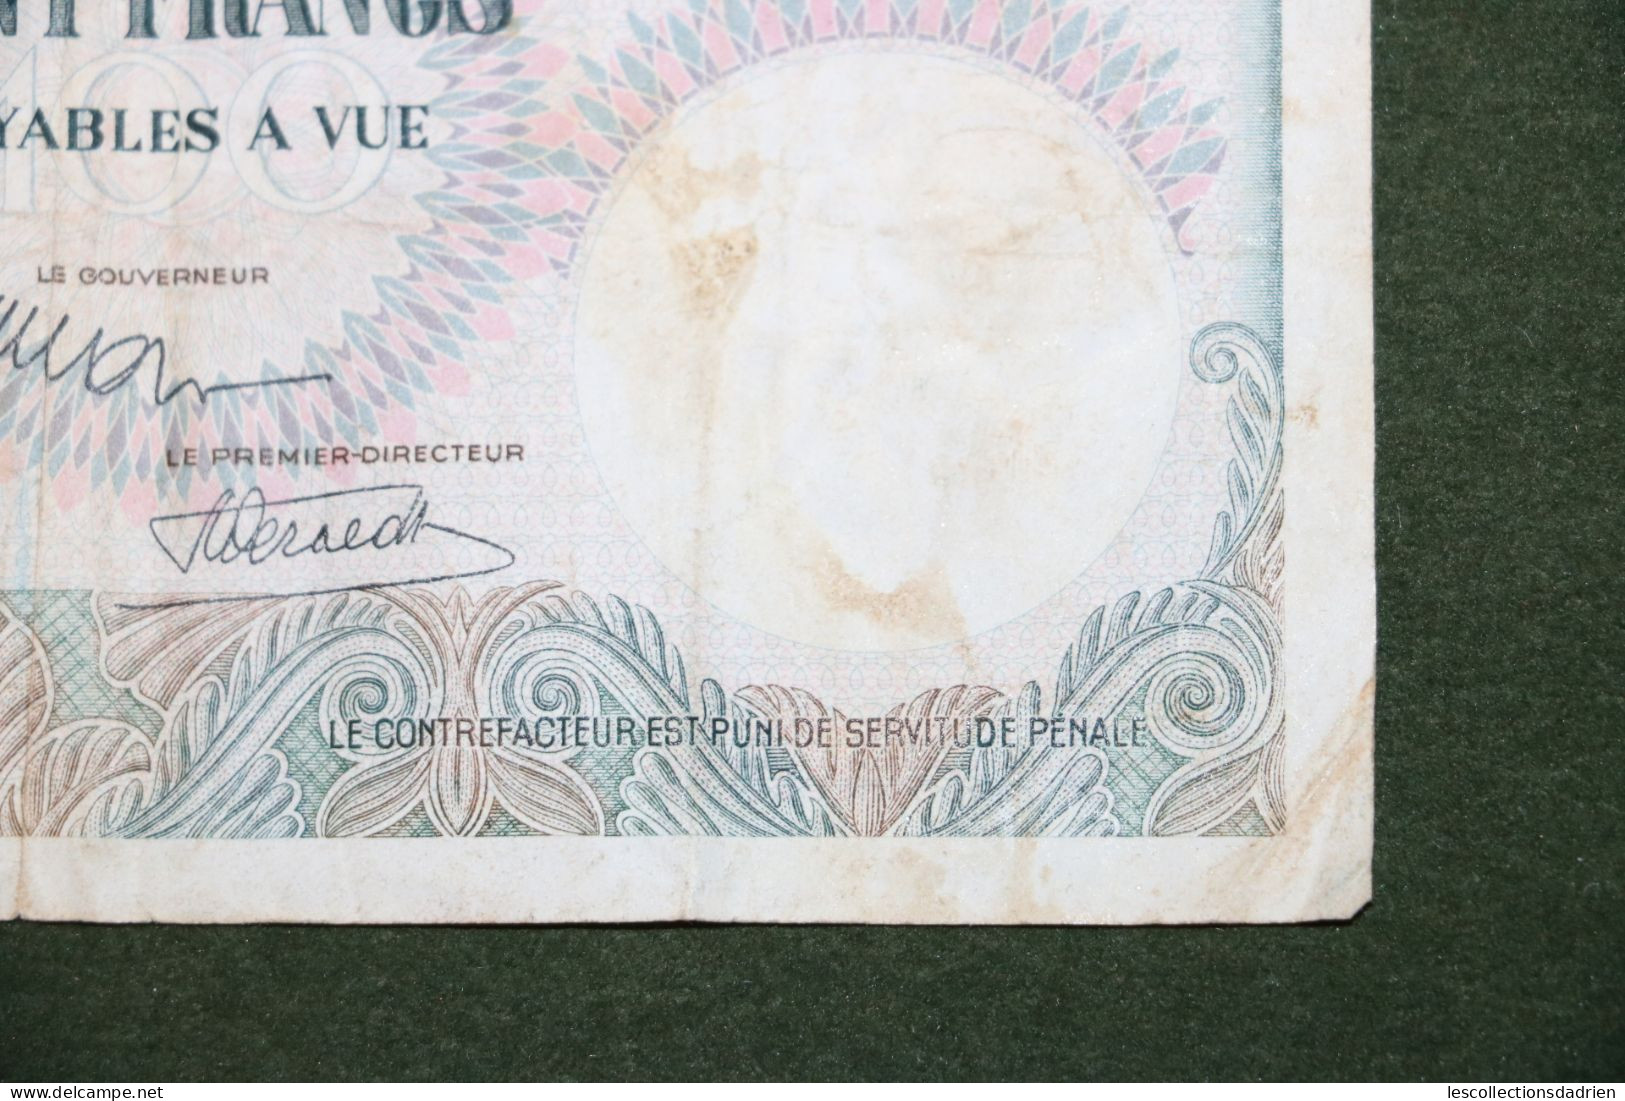 Billet De 100 Francs Congo Belge - 100 Frank Belgische Congo - Ruanda Urundi  1955 - Banknote - Bank Belg. Kongo